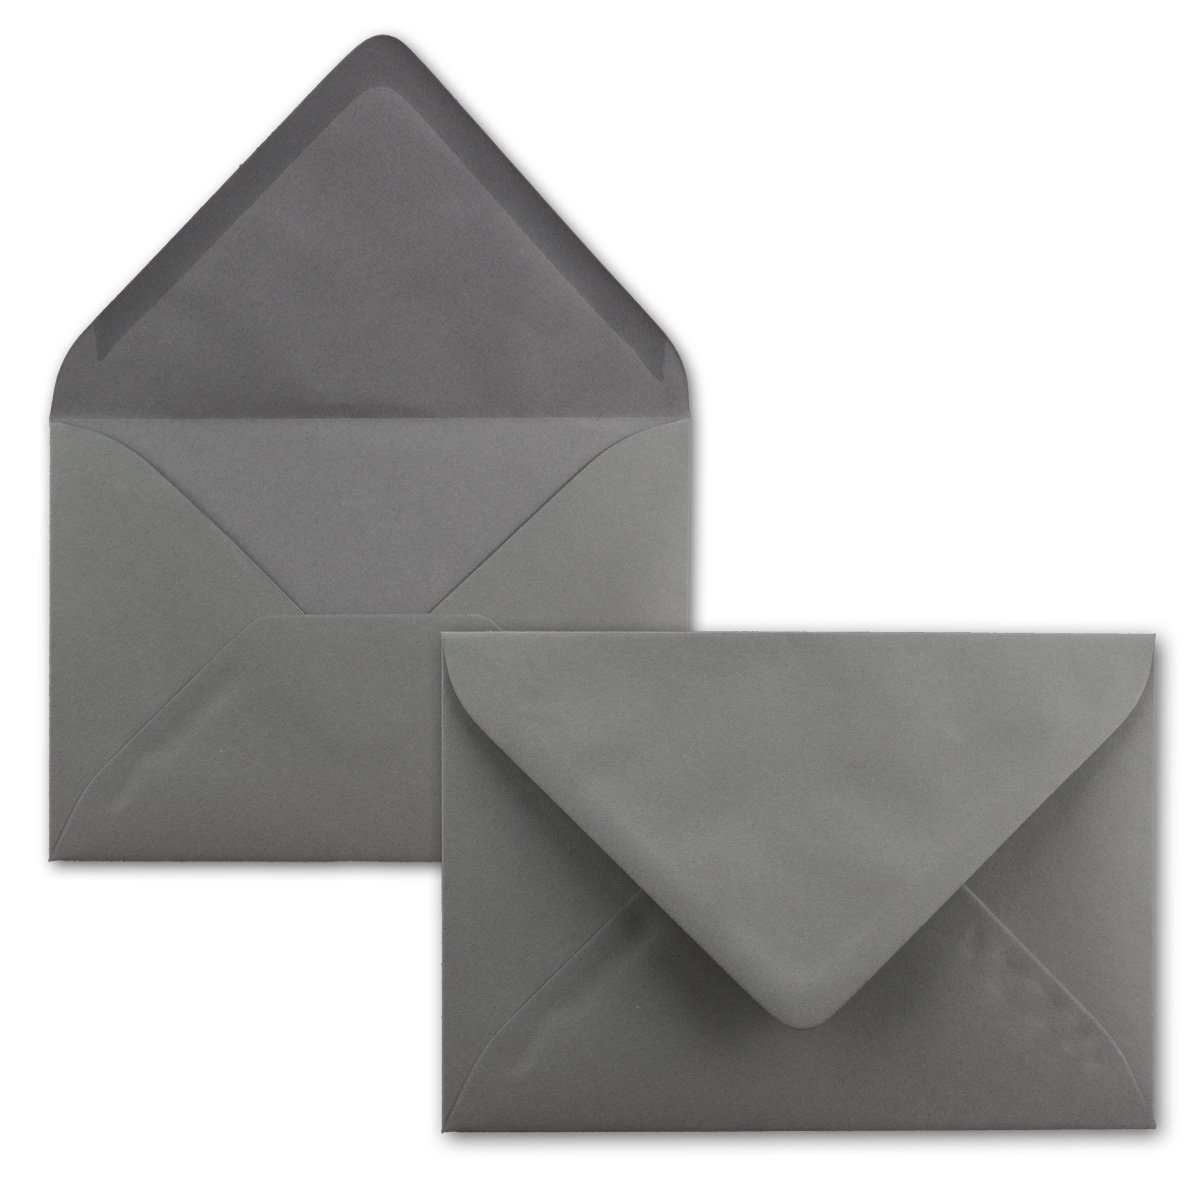 Briefumschläge in Graphit-Grau/Dunkelgrau - 150 Stück - DIN C5 Kuverts 22,0 x 15,4 cm - Nassklebung ohne Fenster - Weihnachten, Grußkarten - Serie FarbenFroh